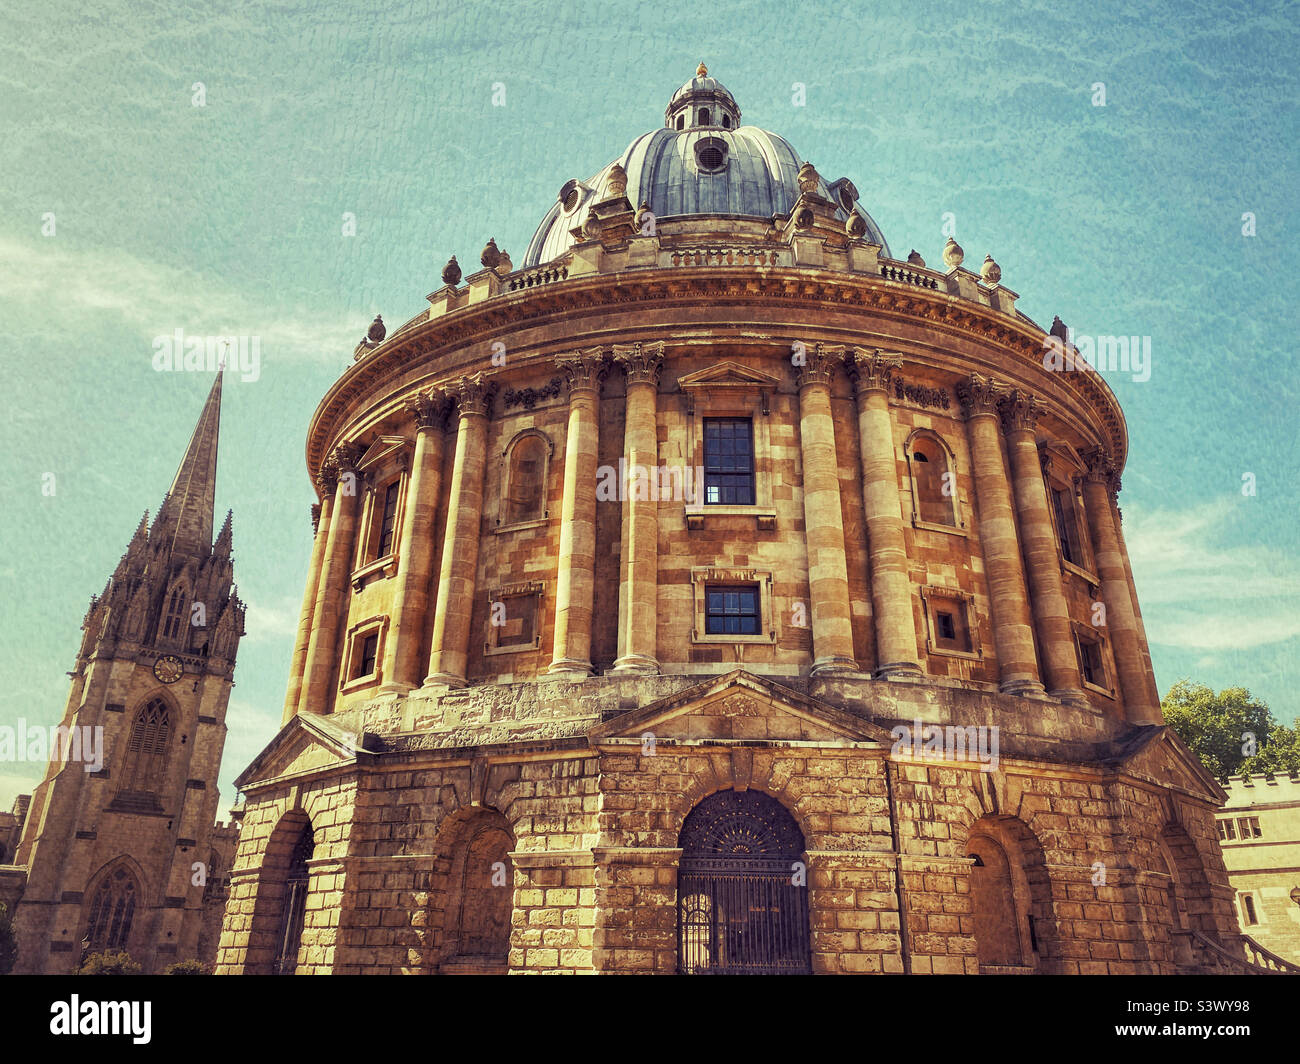 Un'immagine creativa del Radcliffe Camera Building a Oxford, Inghilterra. Questa struttura circolare è utilizzata come biblioteca e area di lettura dagli studenti dell'Università di Oxford. Foto ©️ COLIN HOSKINS. Foto Stock